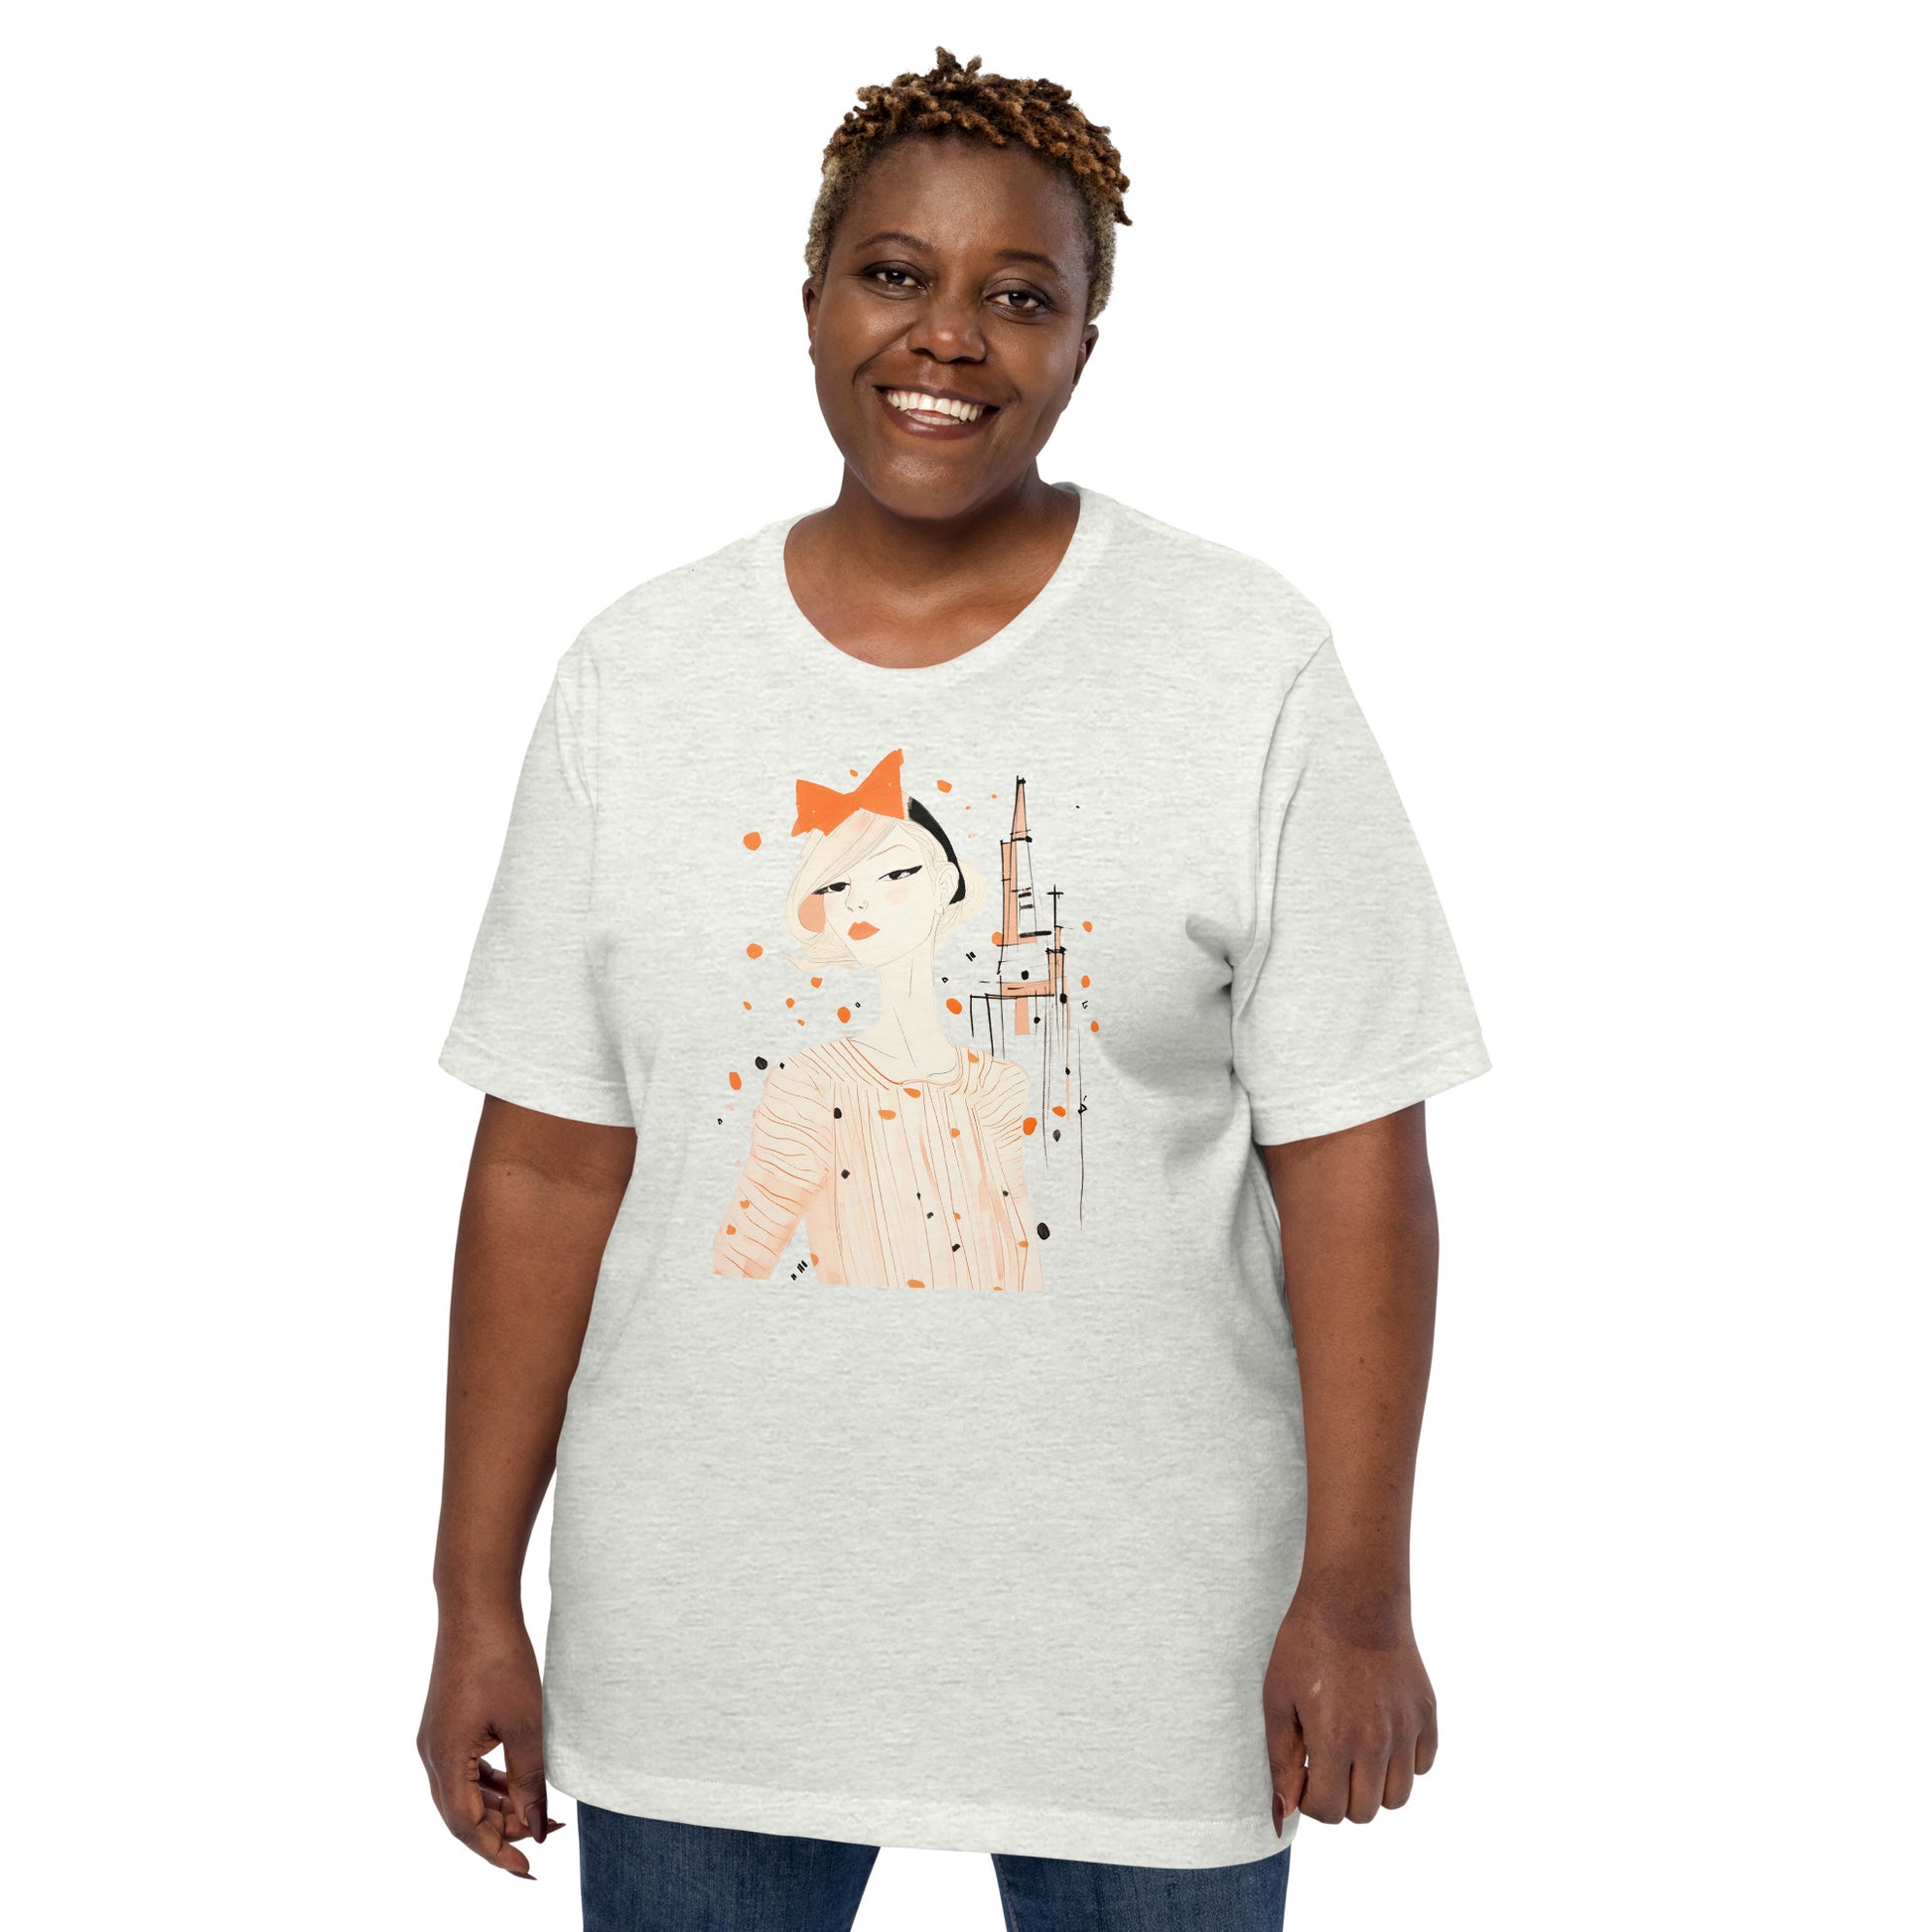  Women's T-shirt, Organic Cotton T-shirt, Custom Made, Eco-Friendly Tee, Women's T-shirts, womens-t-shirt